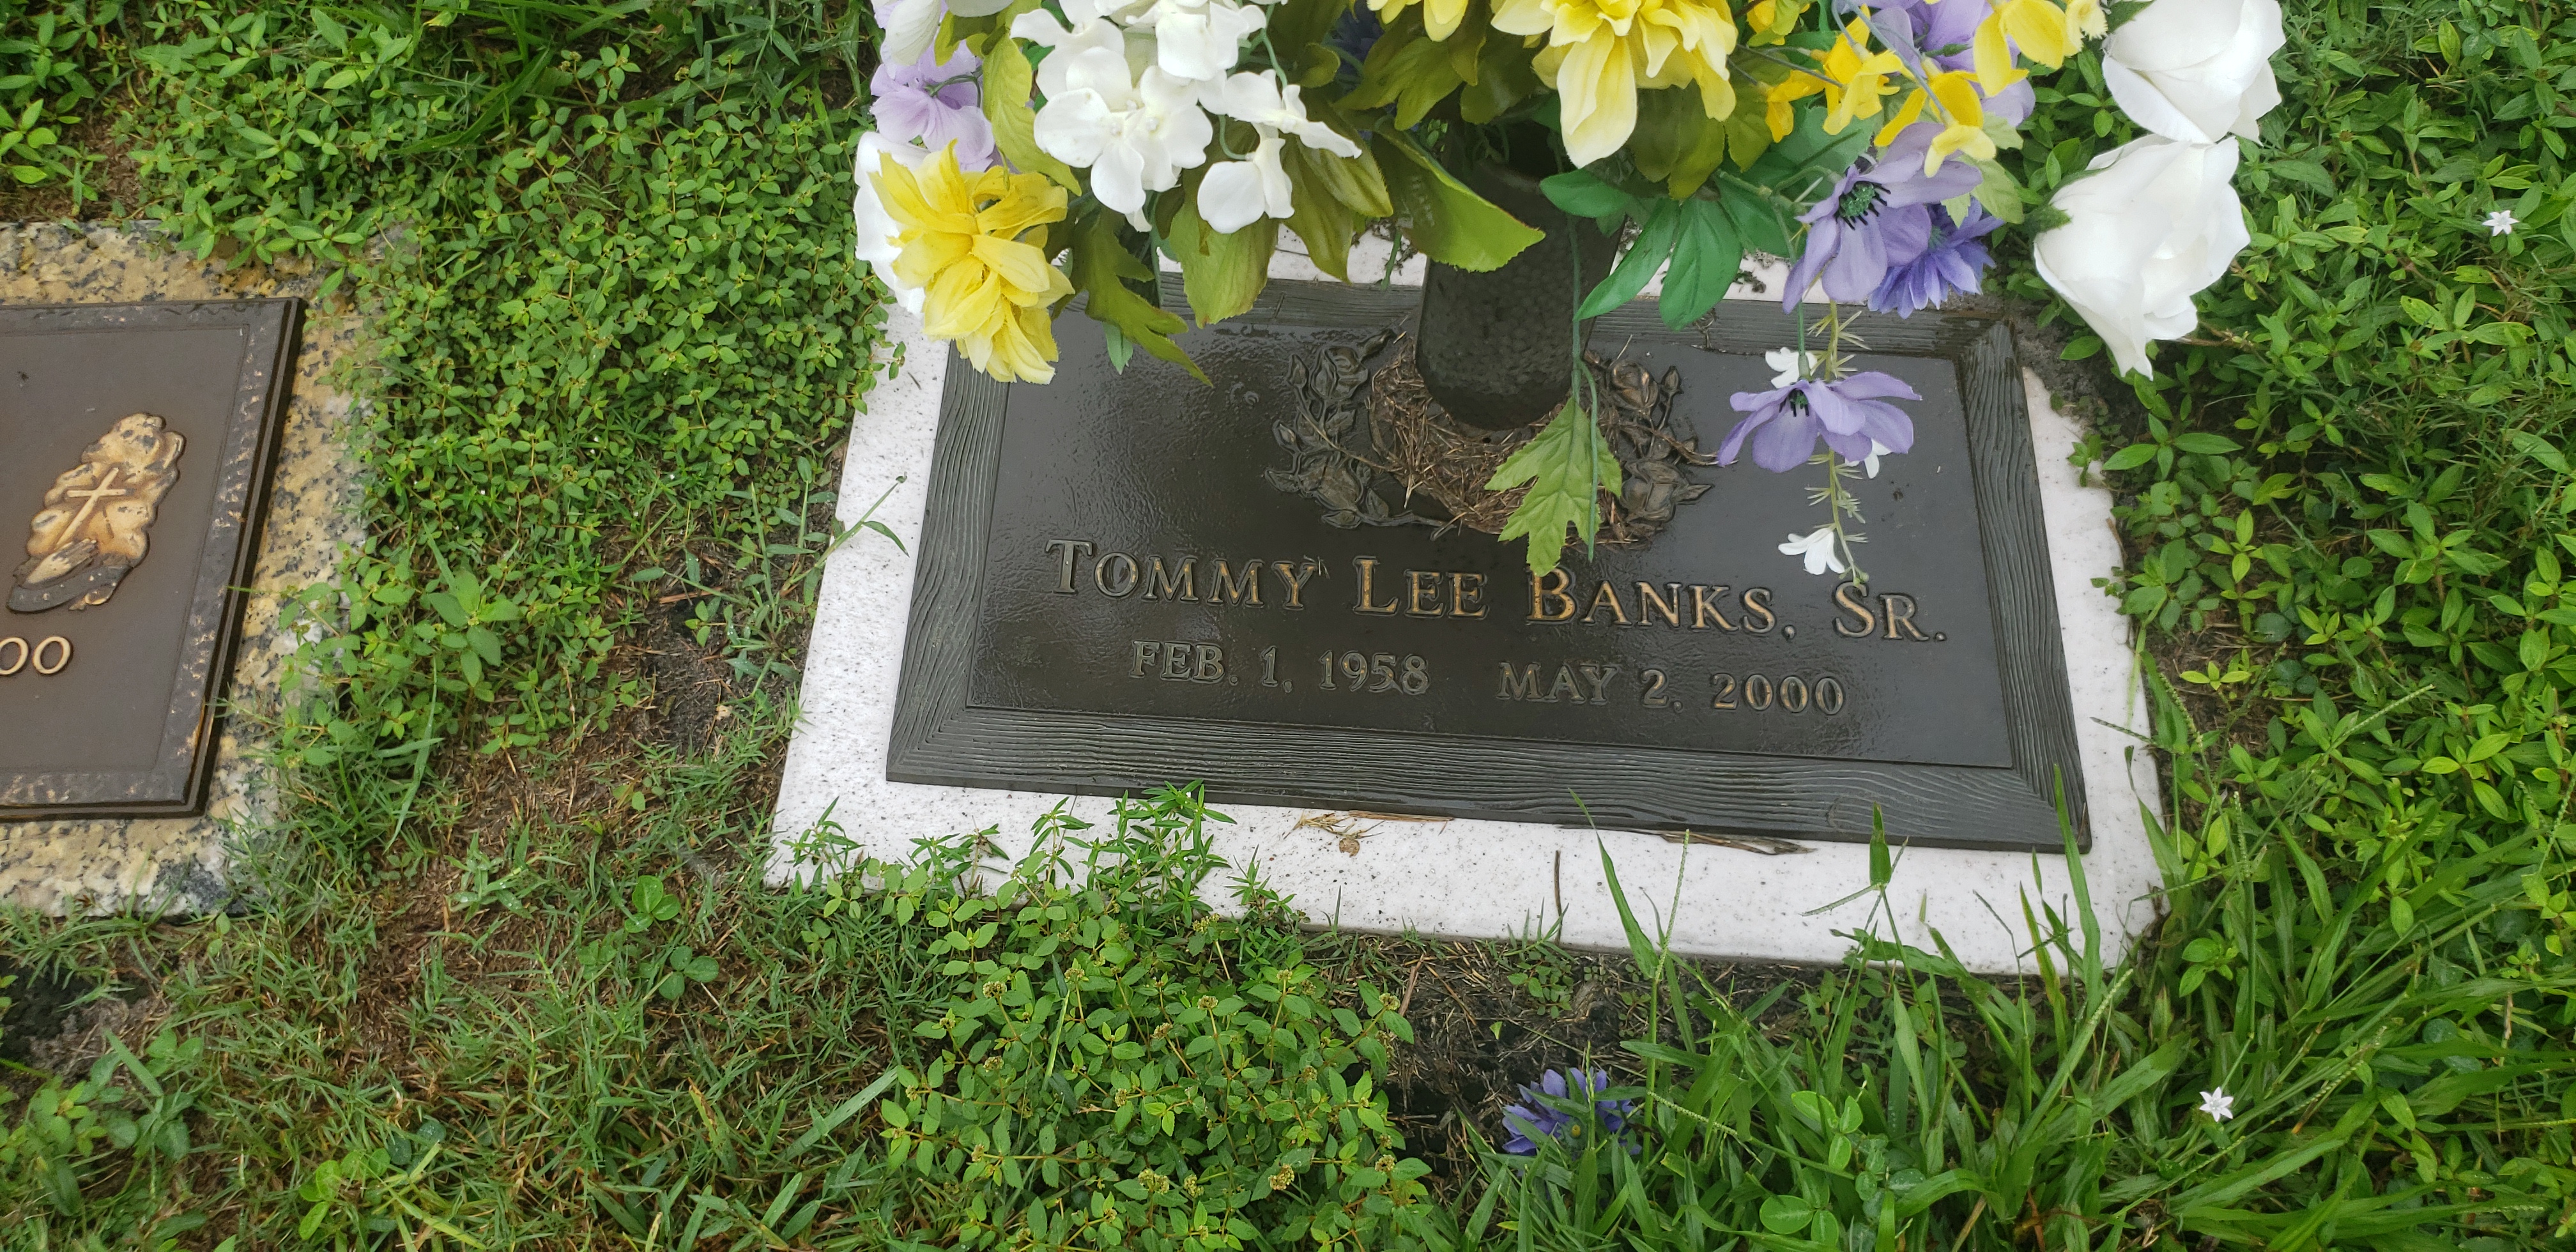 Tommy Lee Banks, Sr